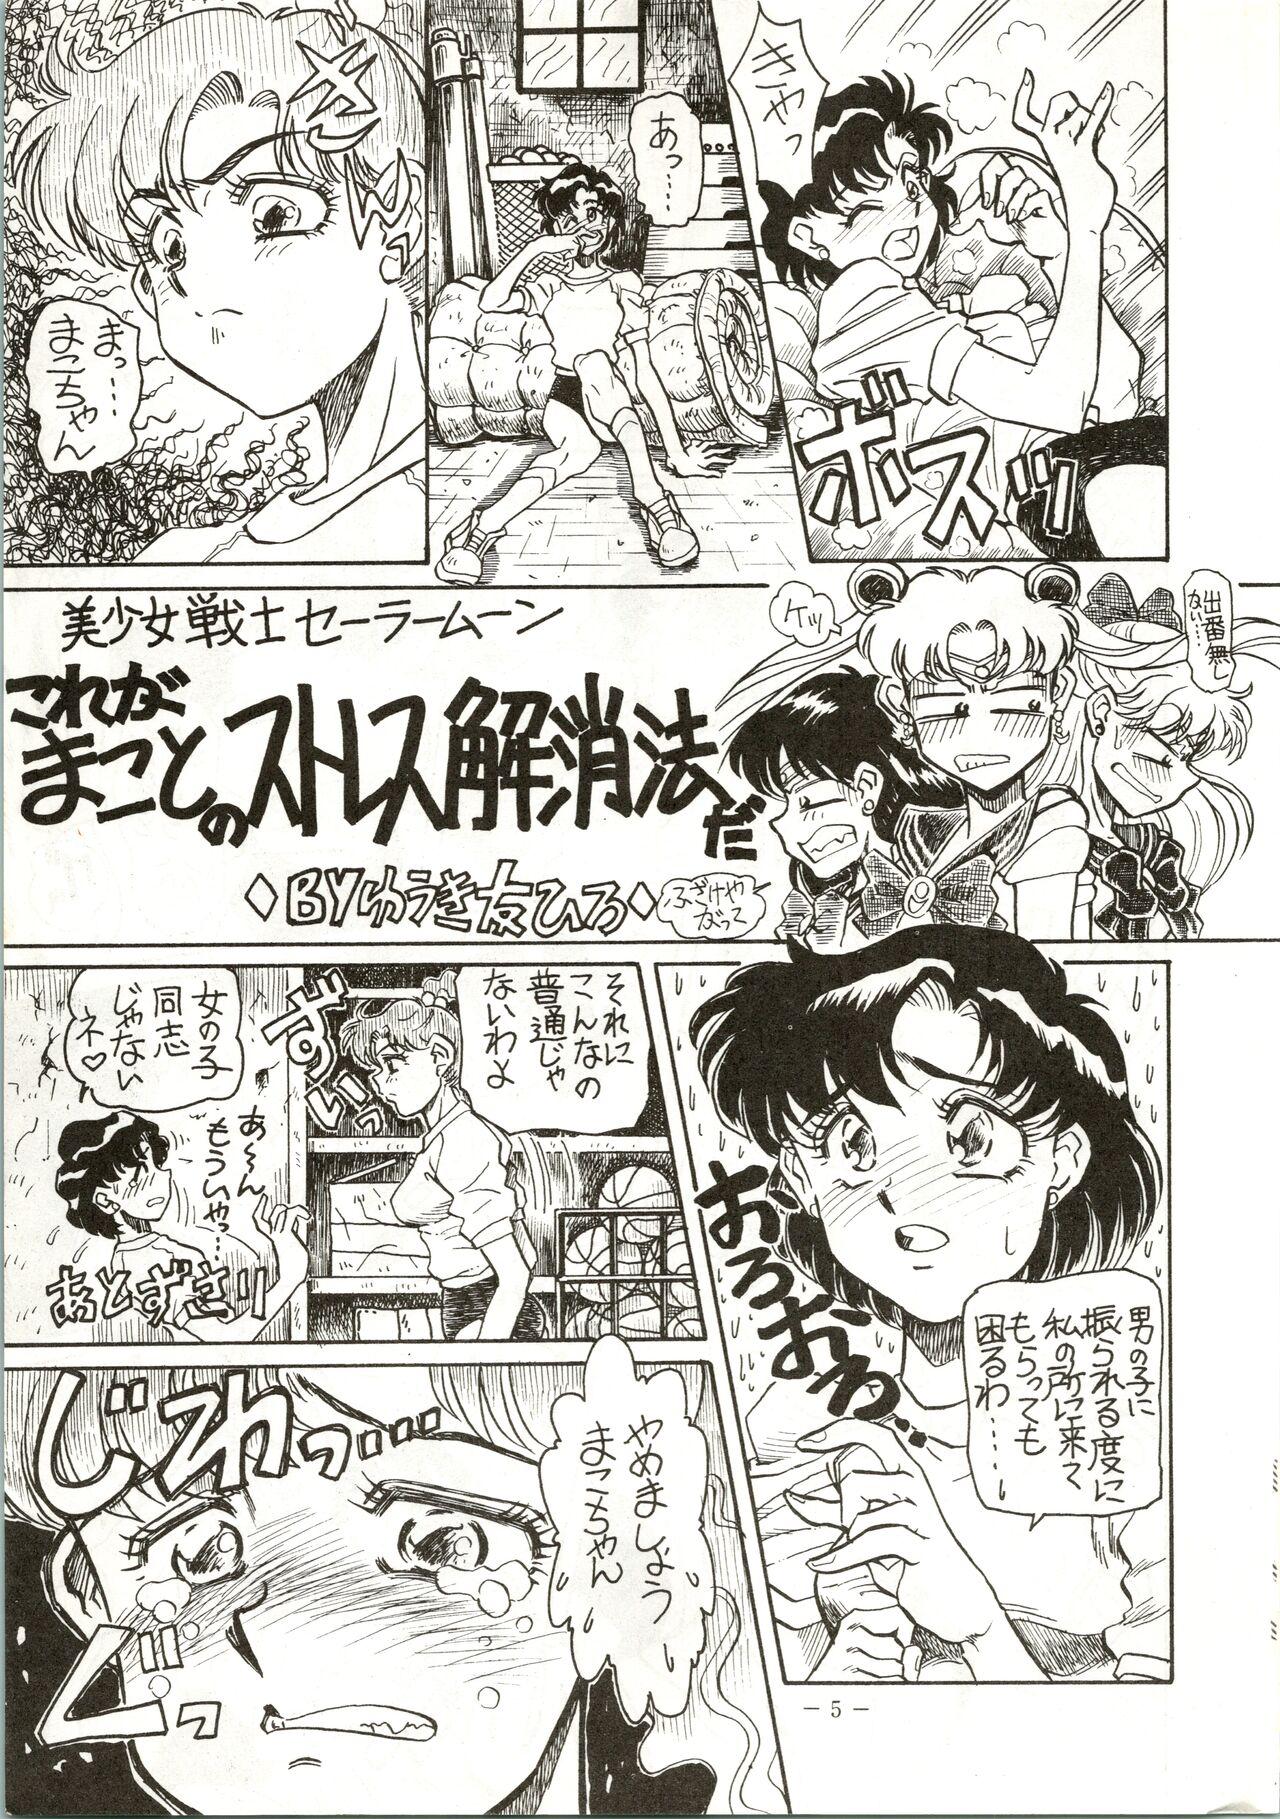 Pene Getsugetsukaasuimokukinkin - Sailor moon | bishoujo senshi sailor moon Verga - Page 5